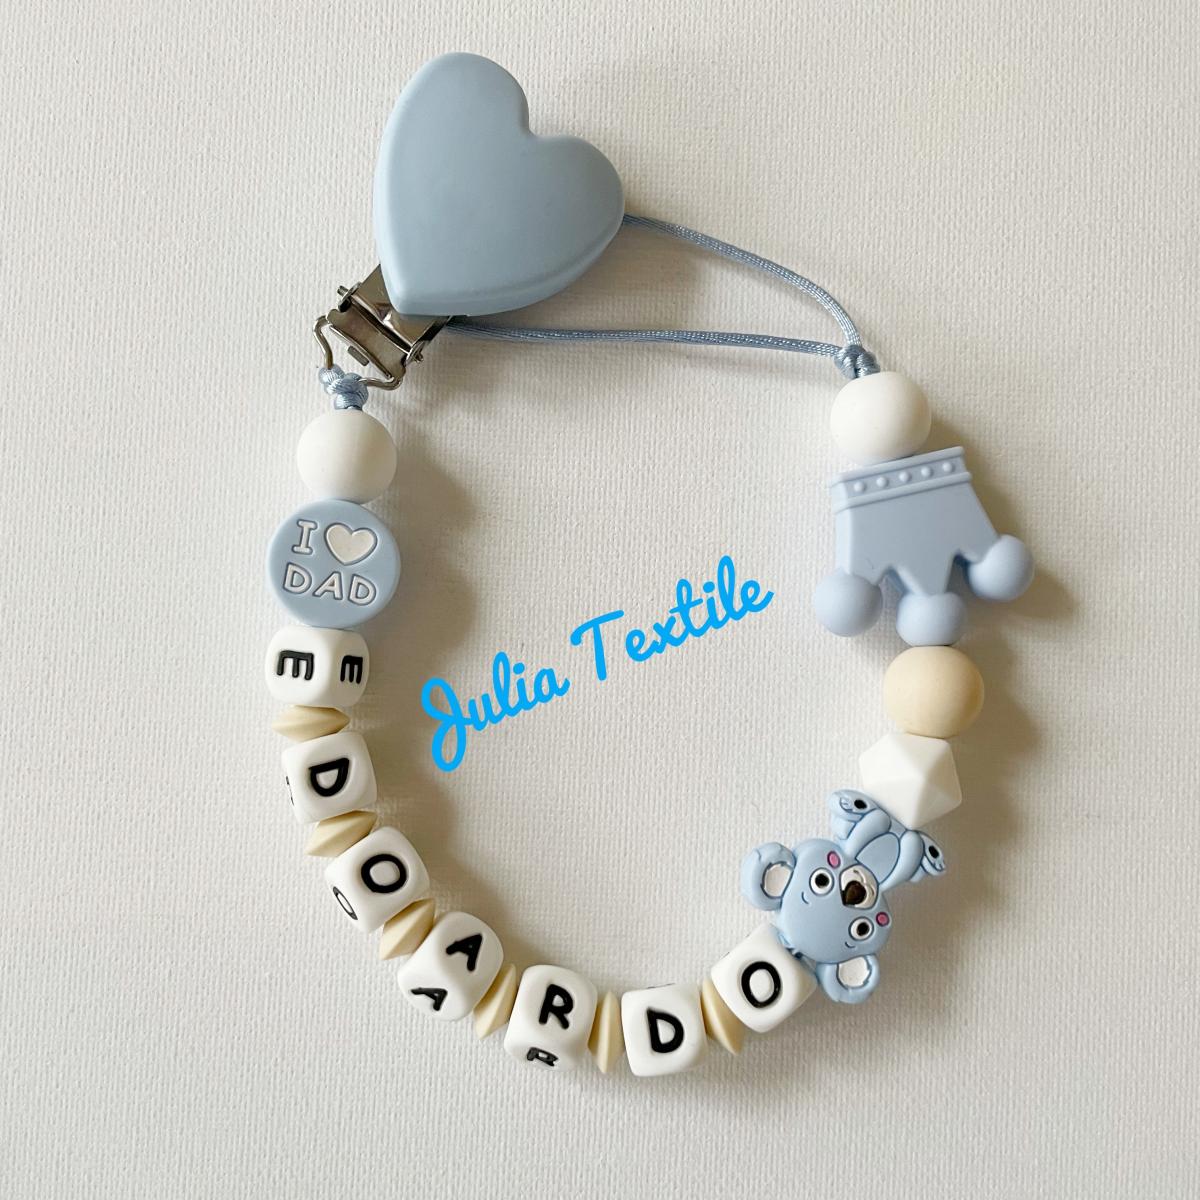 Chain with name, light blue teddy bear heart